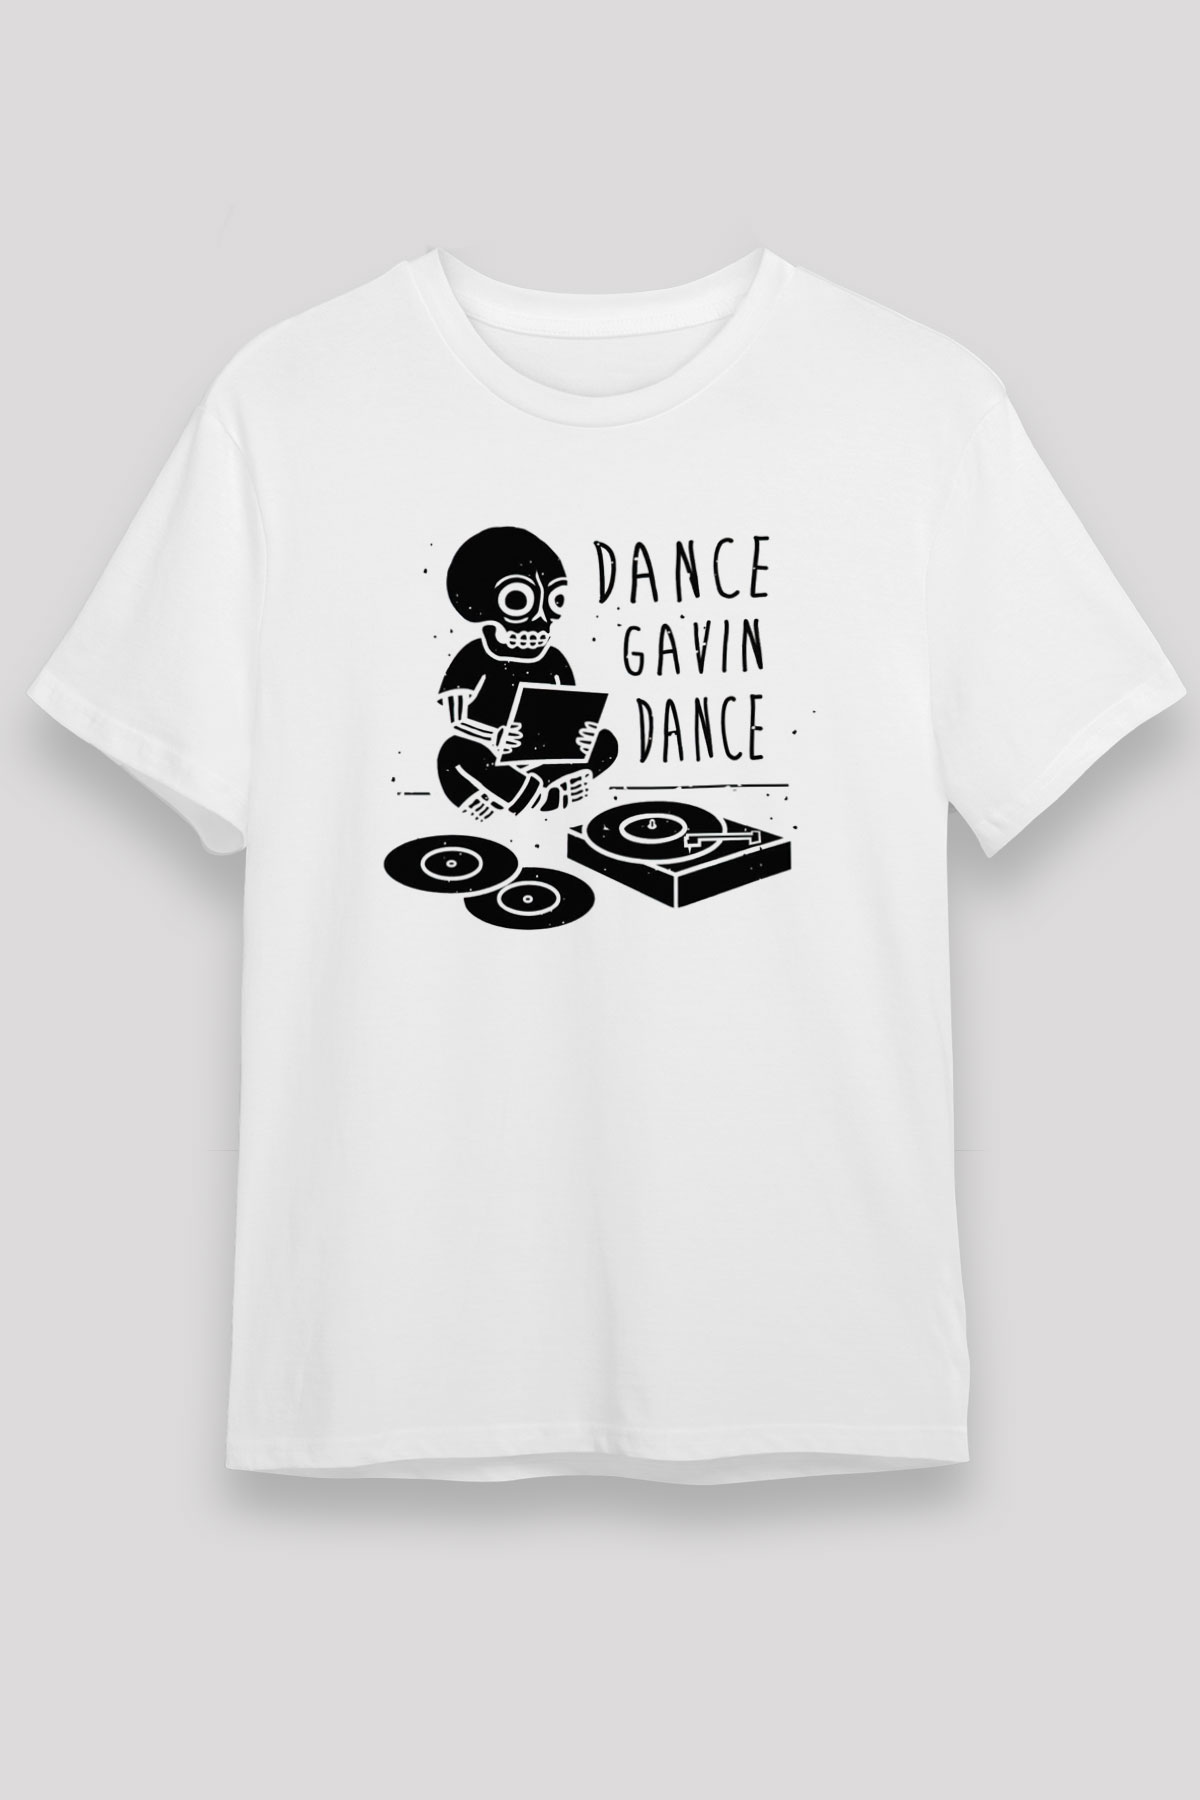 Dance Gavin Dance T shirt, Music Band Tshirt 01